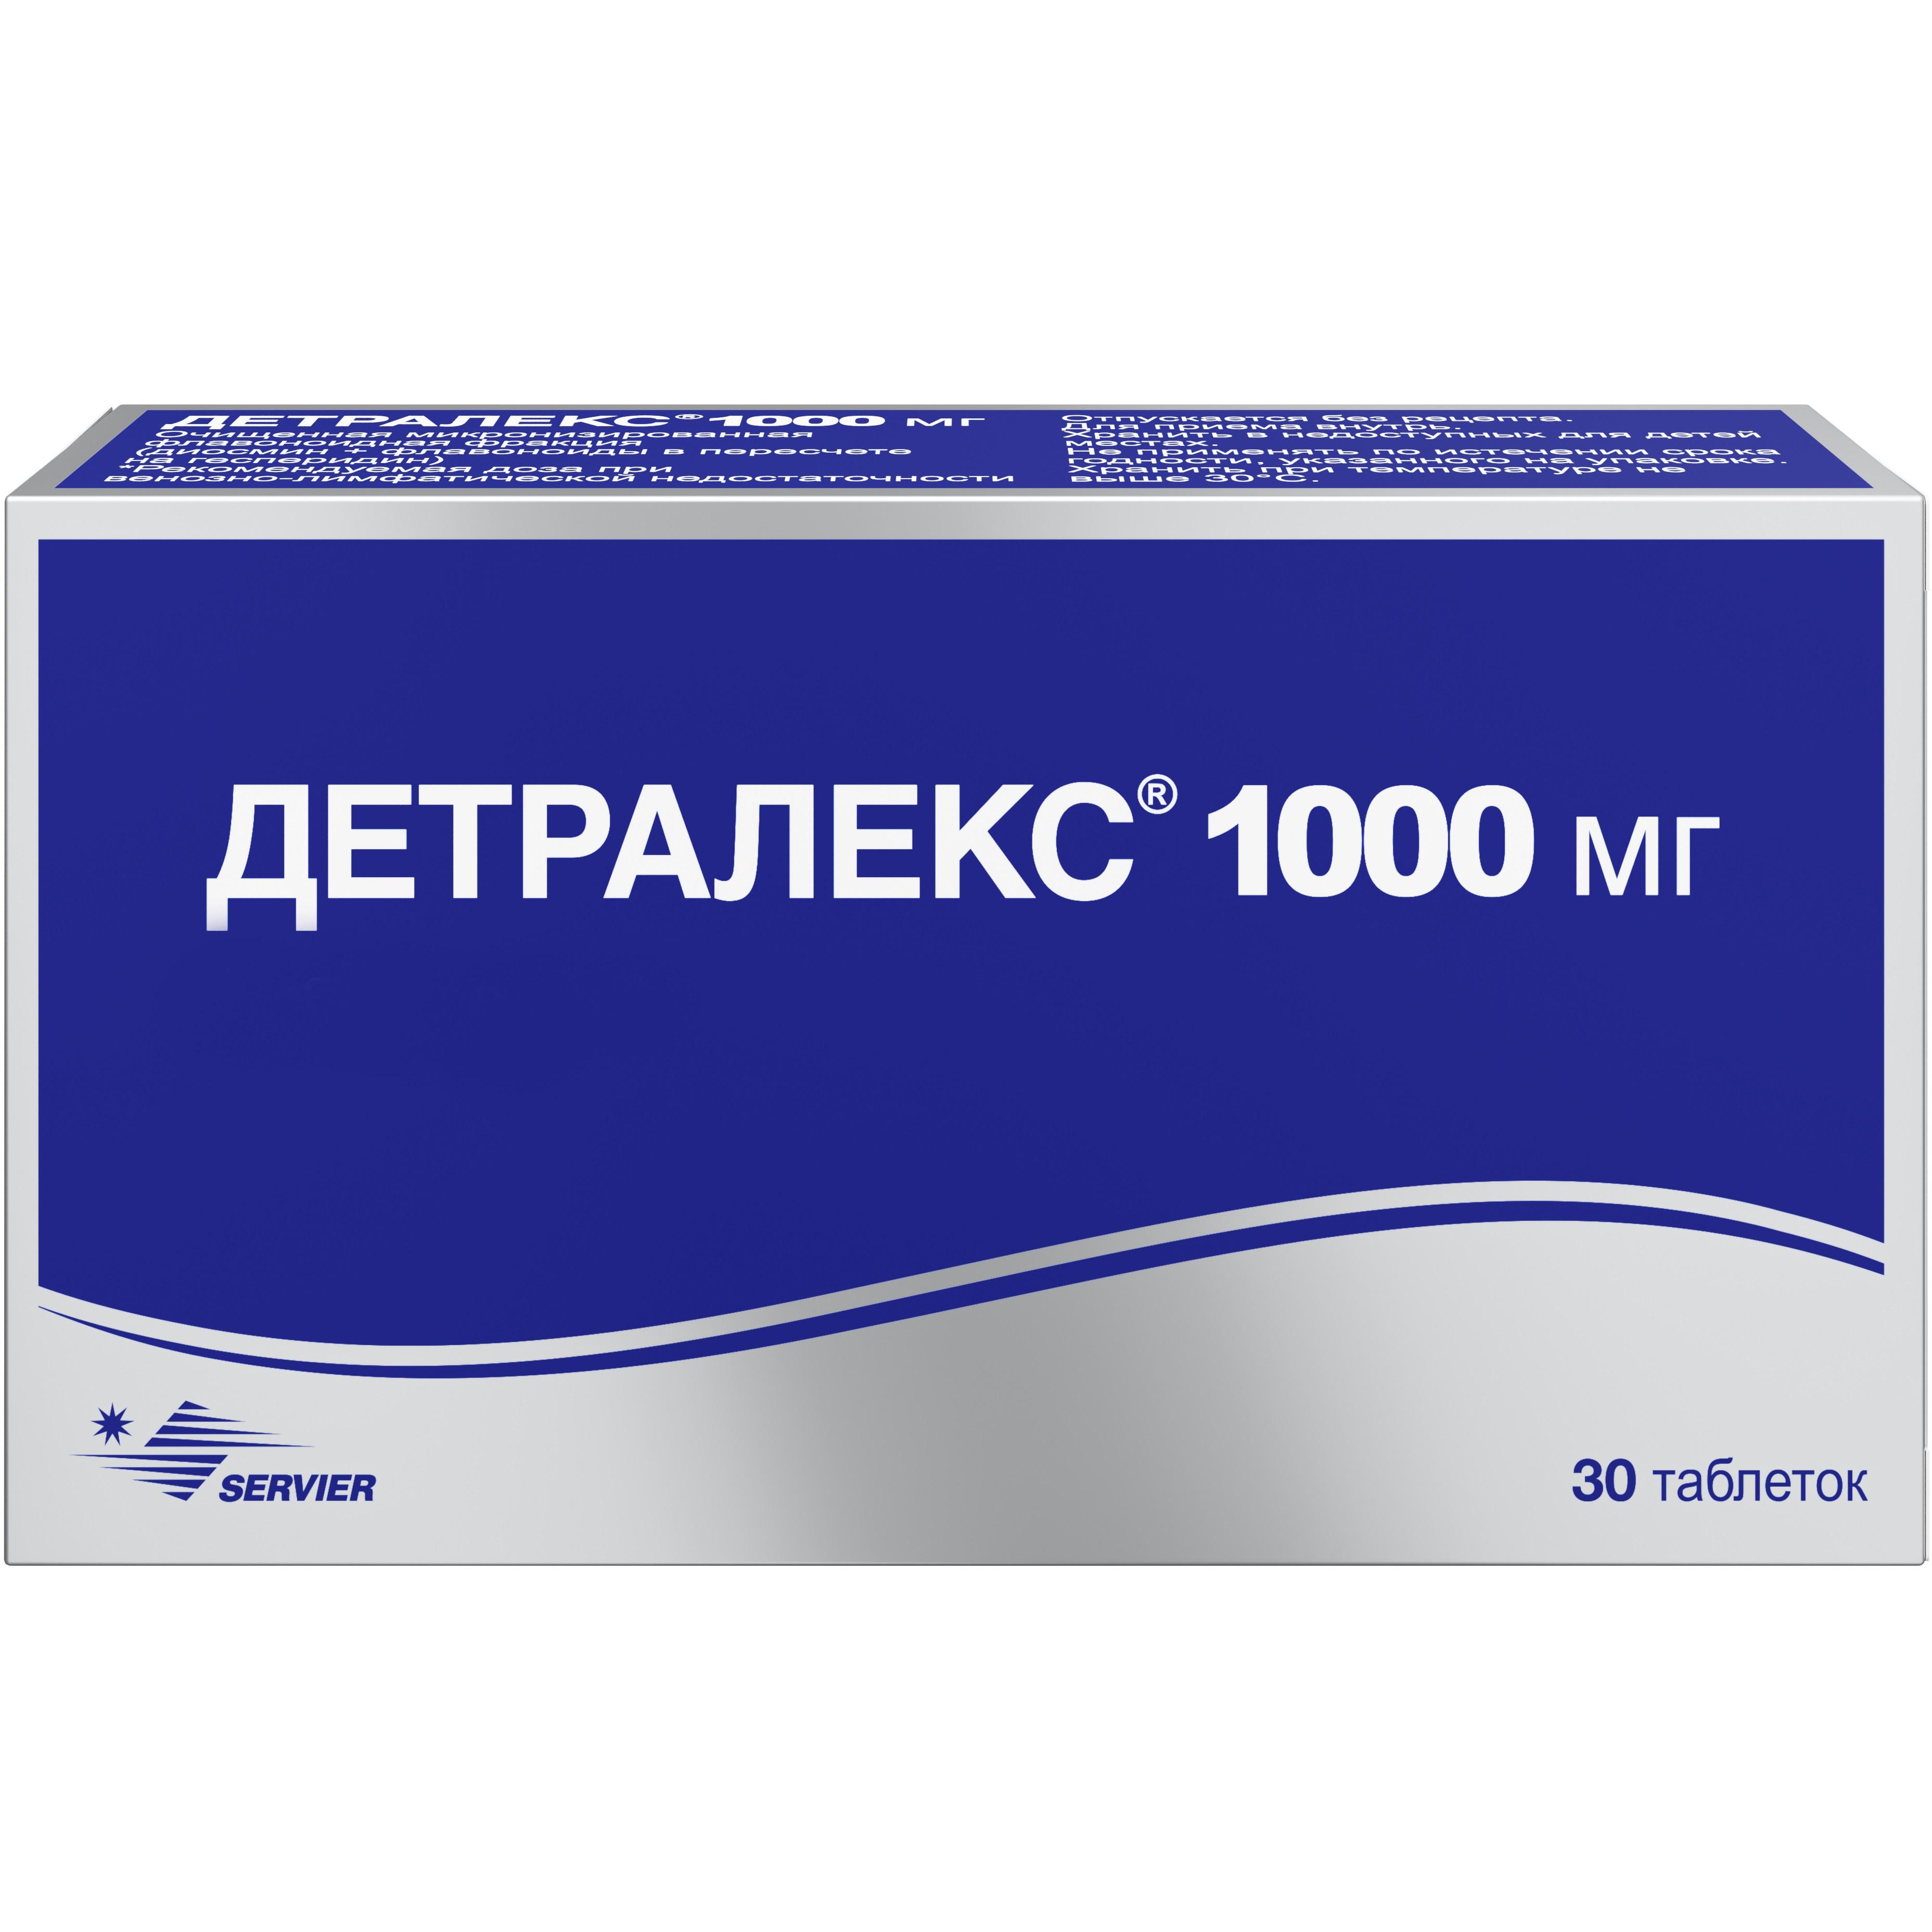 Венарус Цена В Аптеках Екатеринбурга